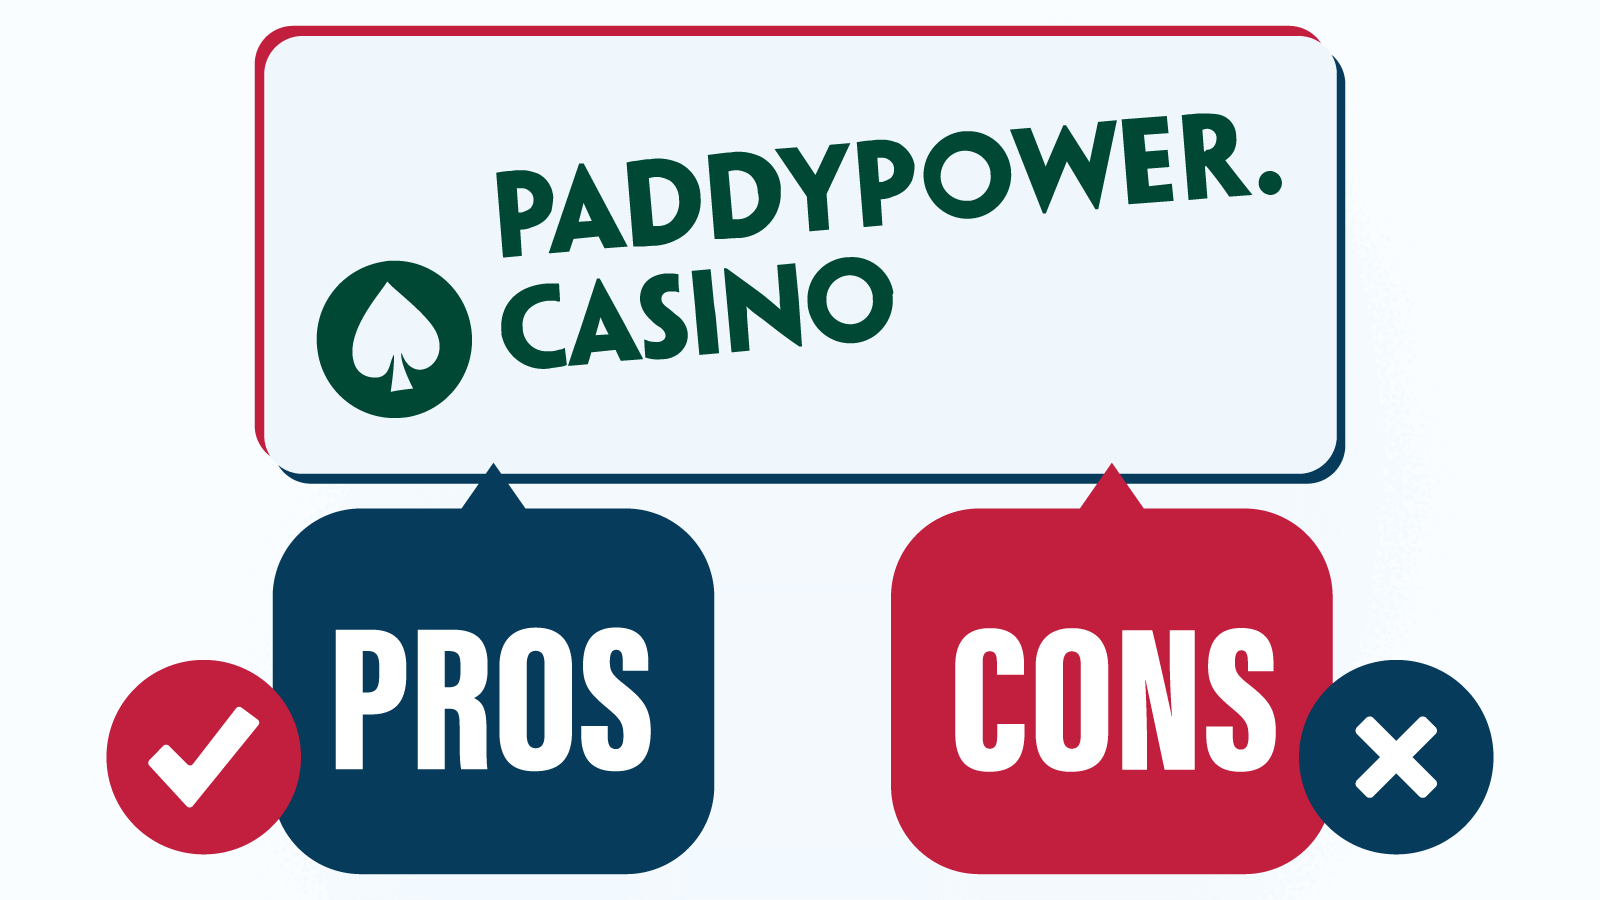 Best-Ranked Deposit 10 Casino – Paddy Power Casino